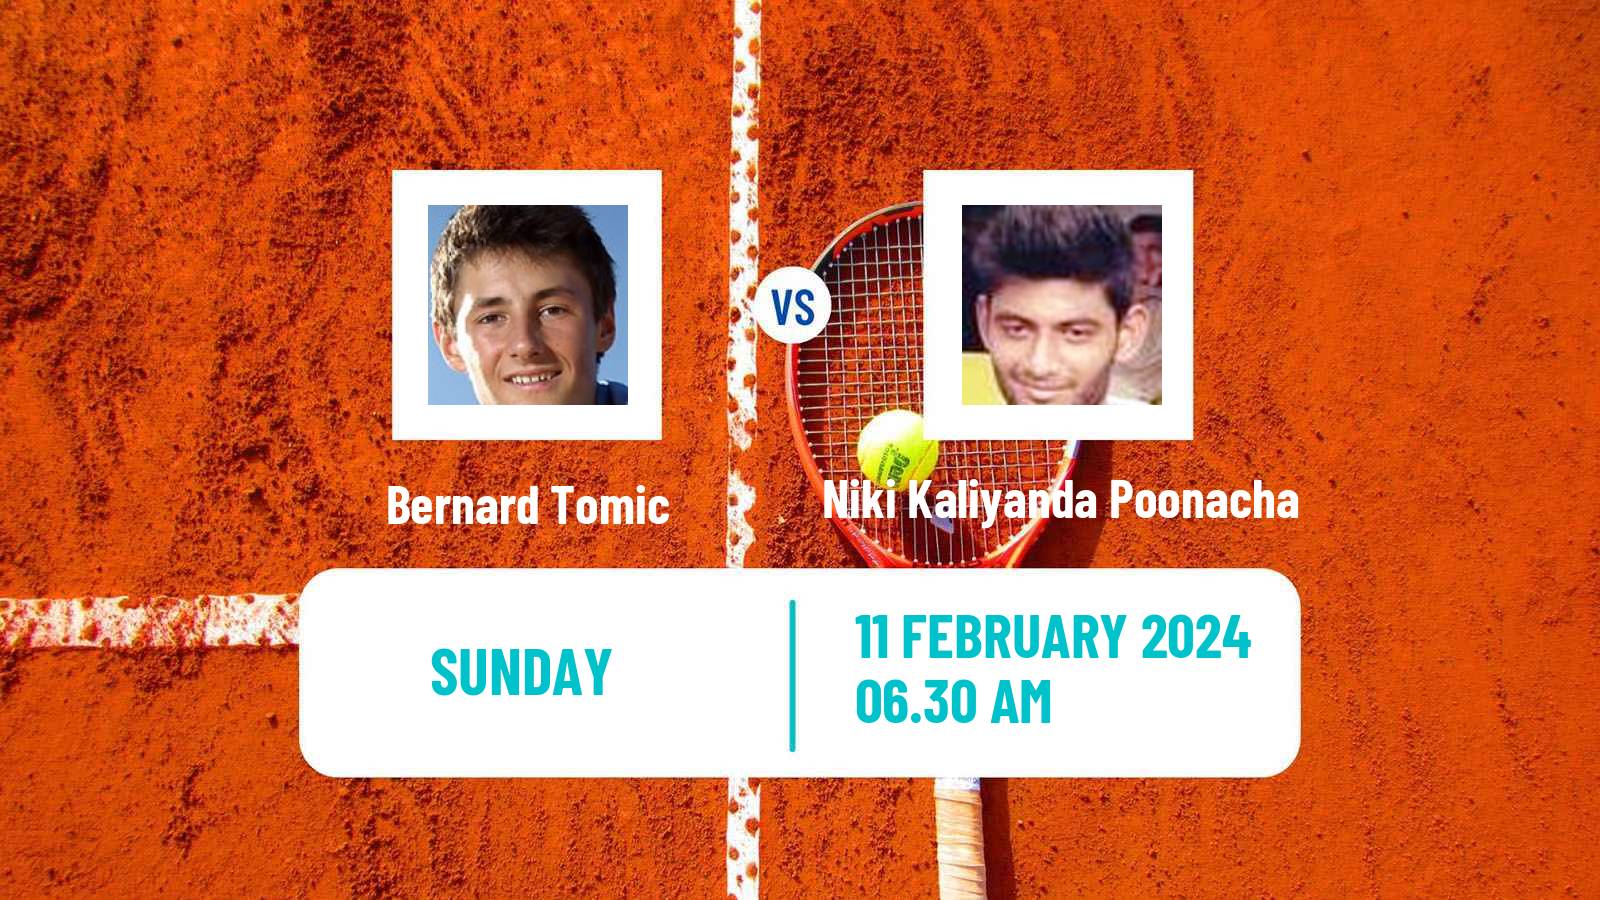 Tennis Bengaluru Challenger Men Bernard Tomic - Niki Kaliyanda Poonacha